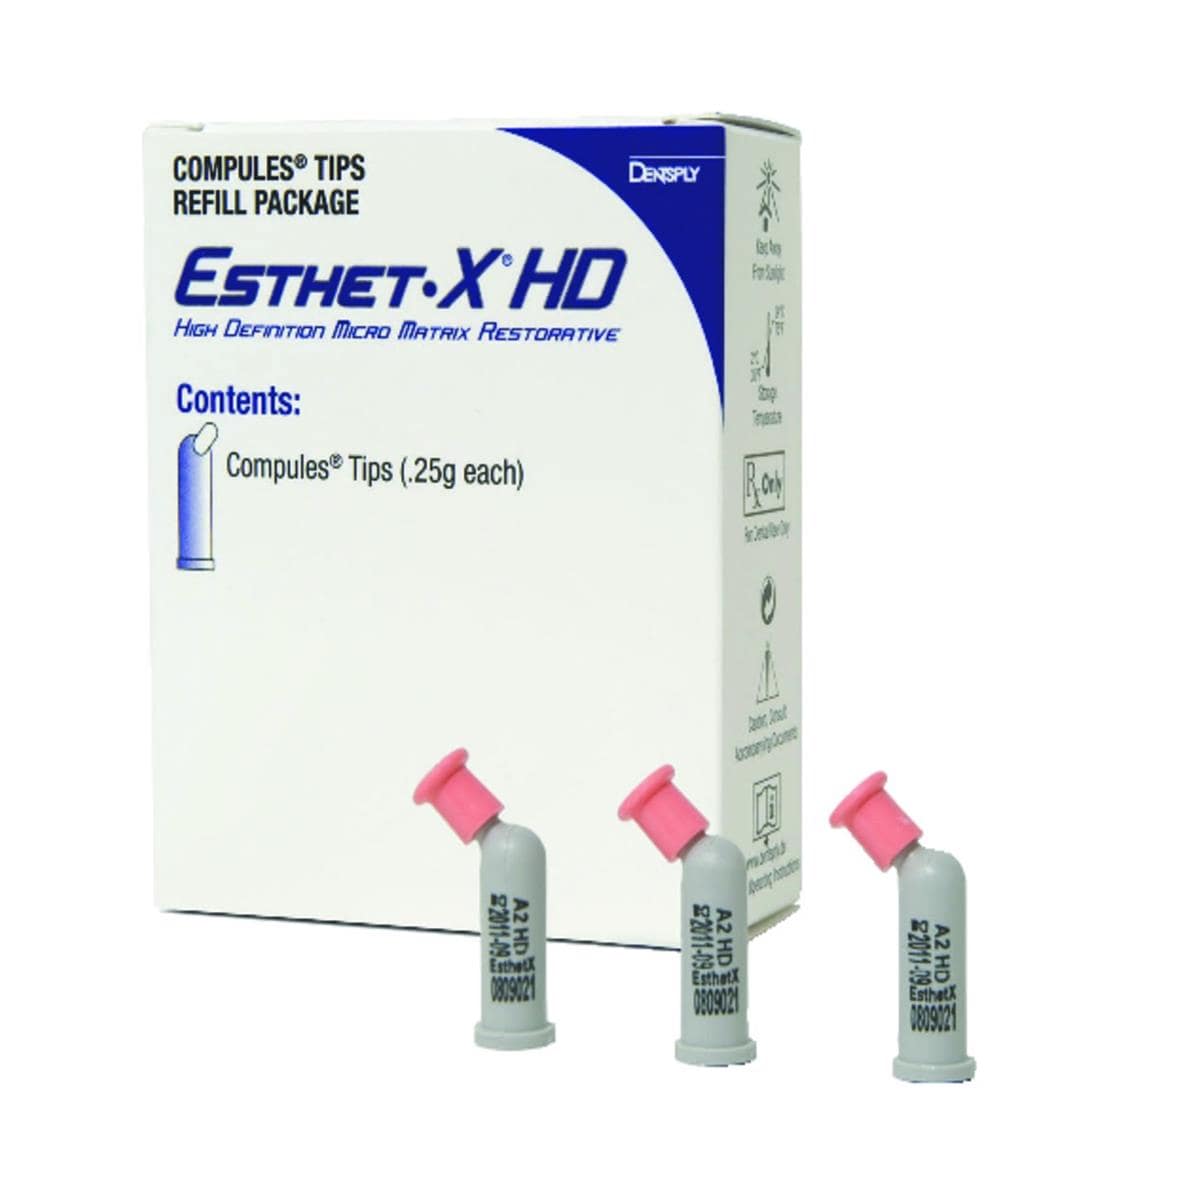 Esthet-X HD DENTSPLY SIRONA - Blanc mail - Unidoses de 0,25g - Bote de 10